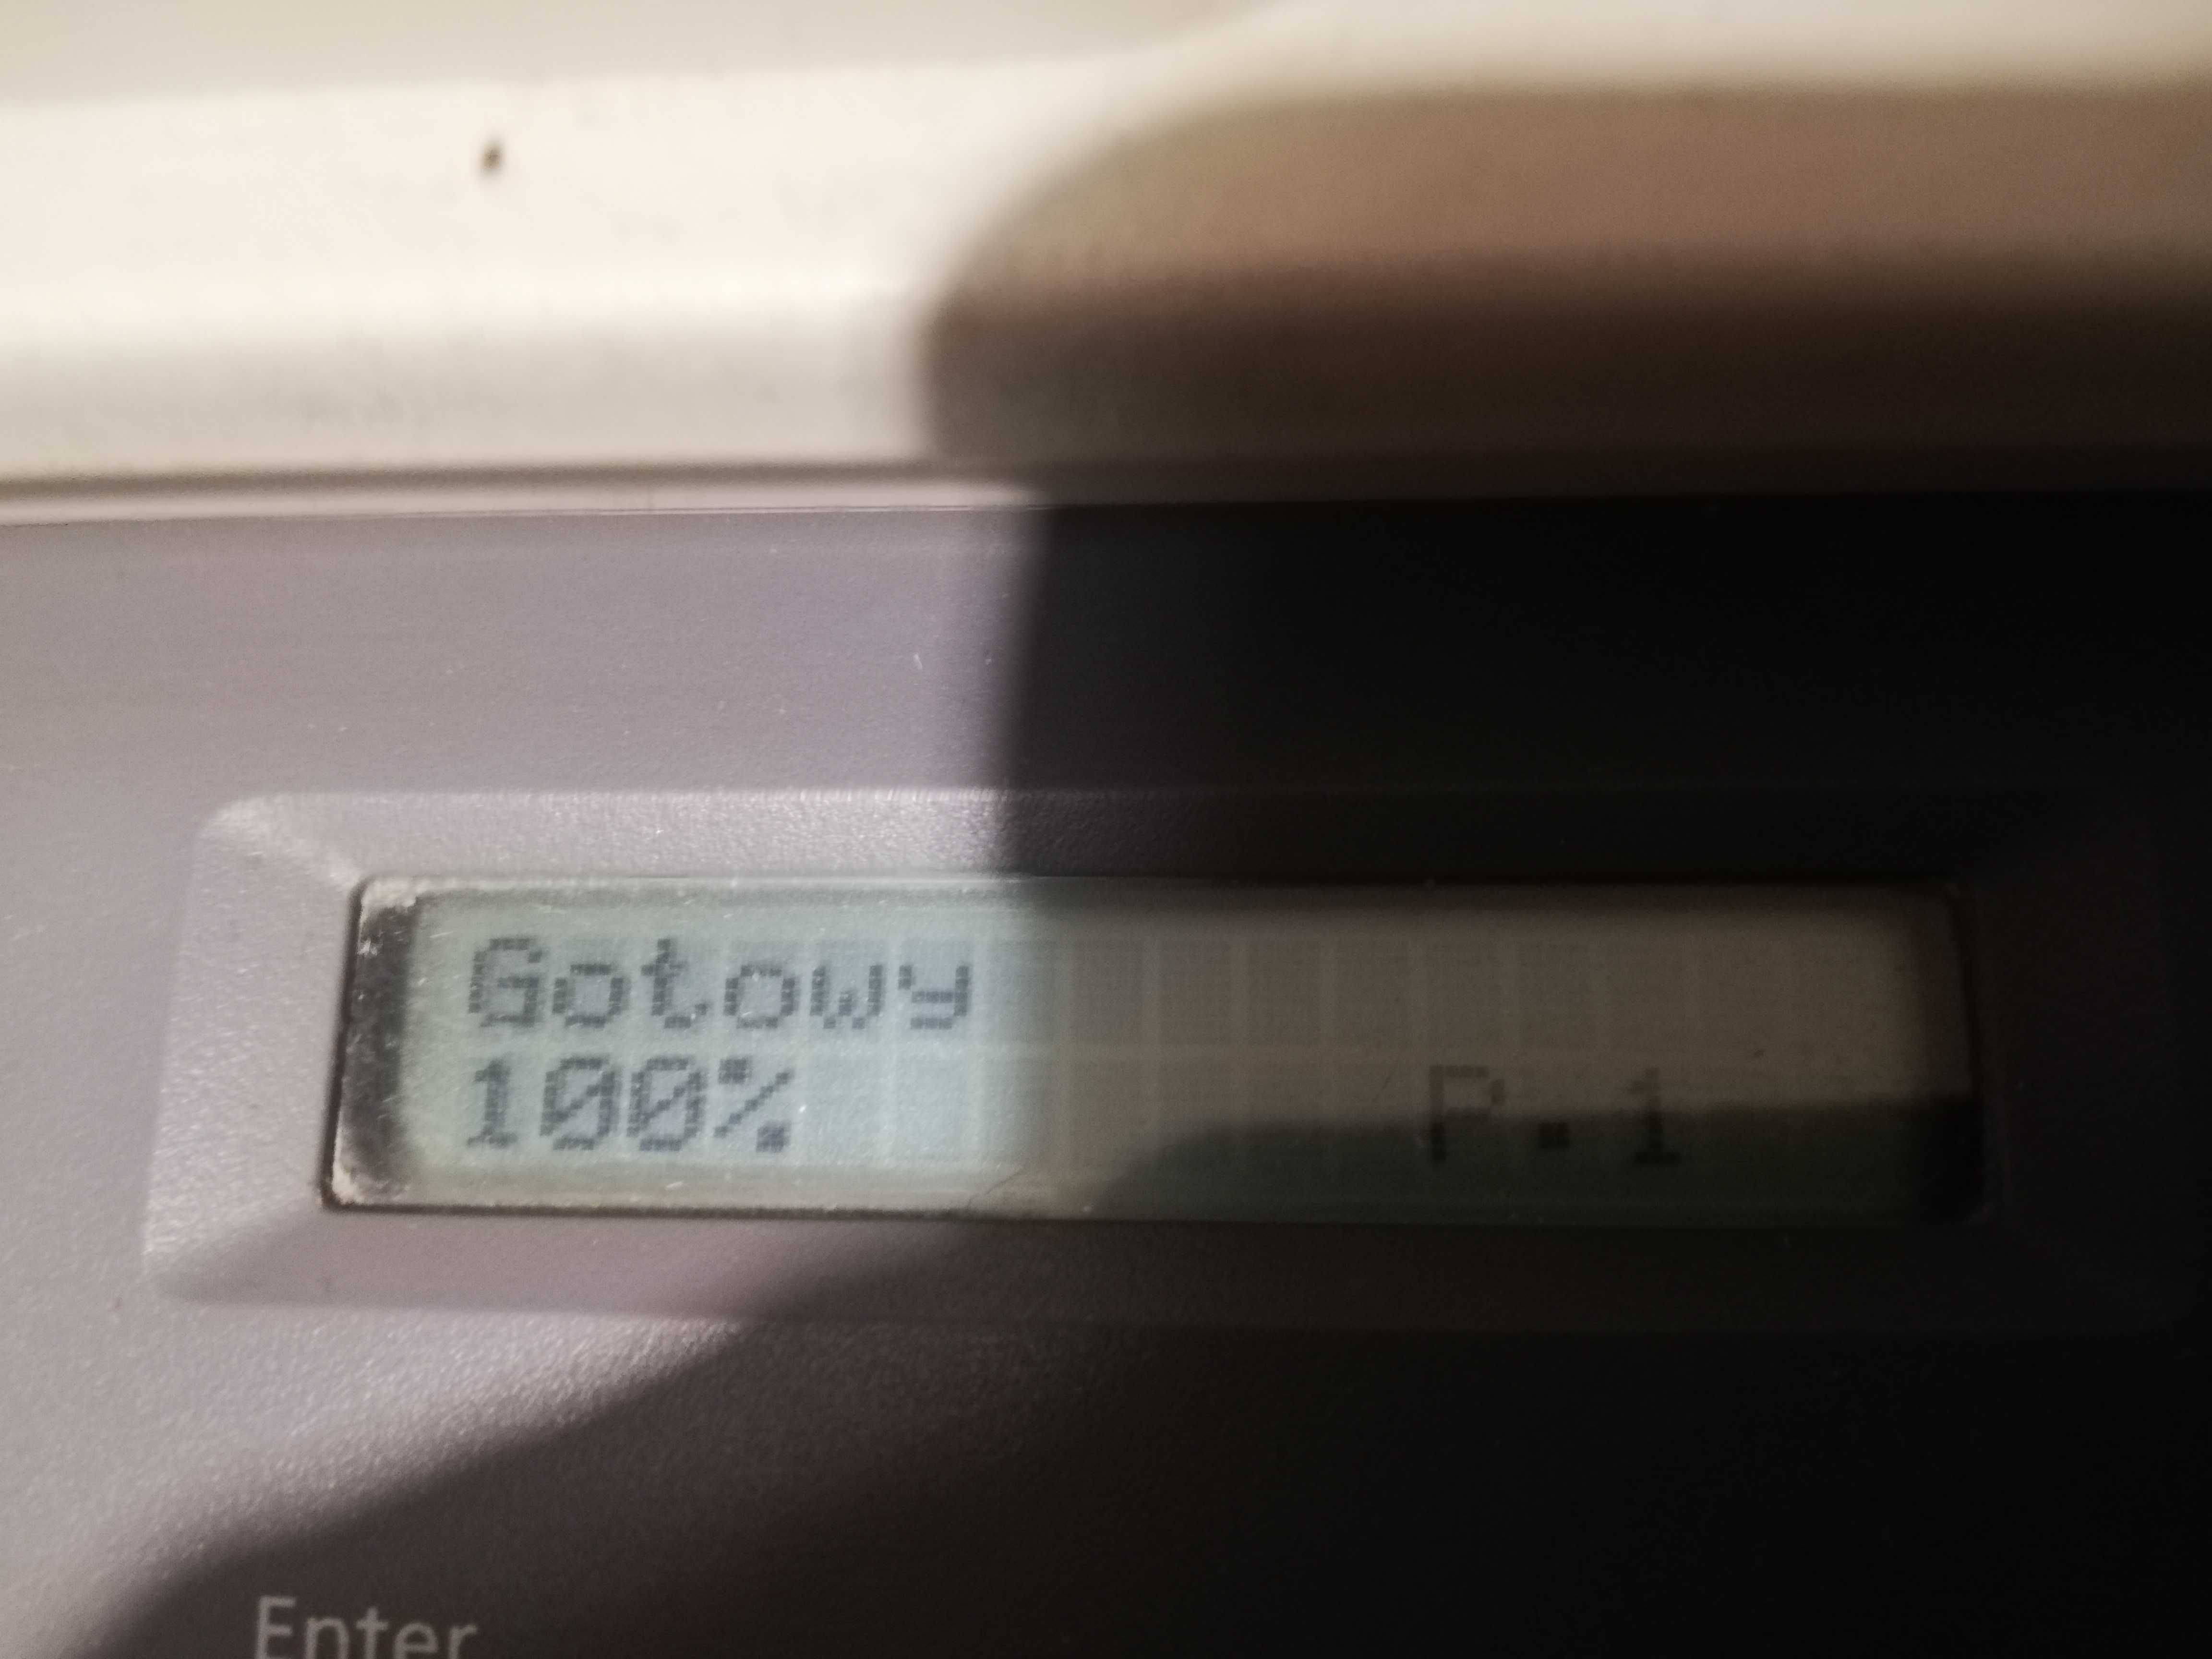 Sprzedam laserową drukarkę Samsung SCX 4725FN